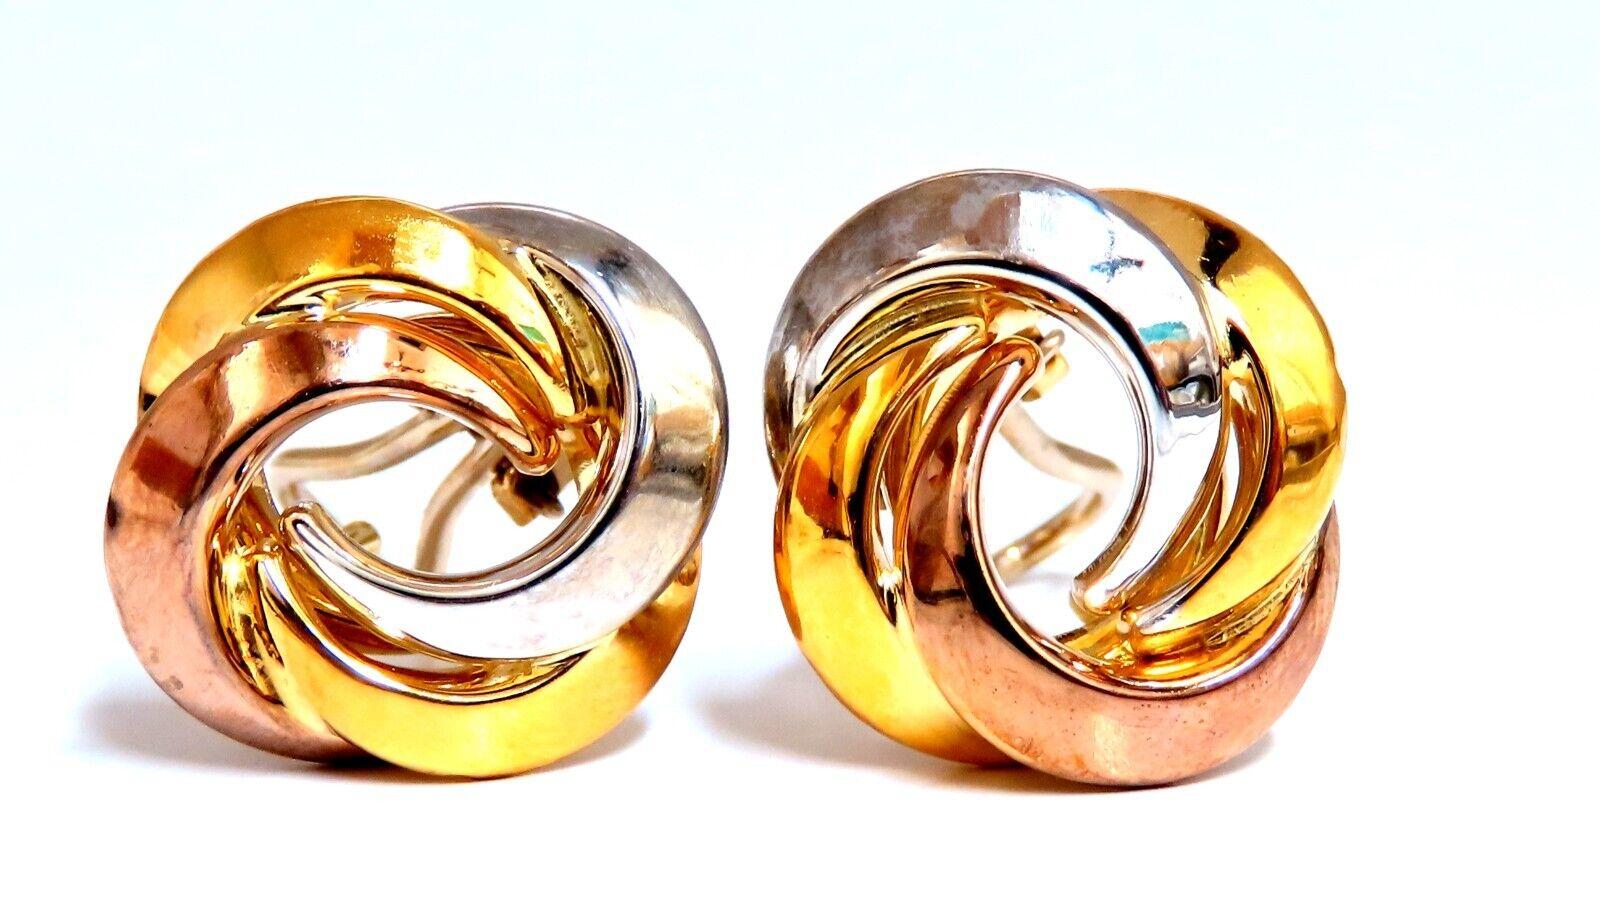 Runde Clip-Ohrringe

Abmessungen der Ohrringe:

17mm Durchmesser

Von vorne nach hinten: 15 mm

5 mm Tiefe

9,3 Gramm / 18kt. Gelbgold

Ohrringe sind wunderschön gemacht